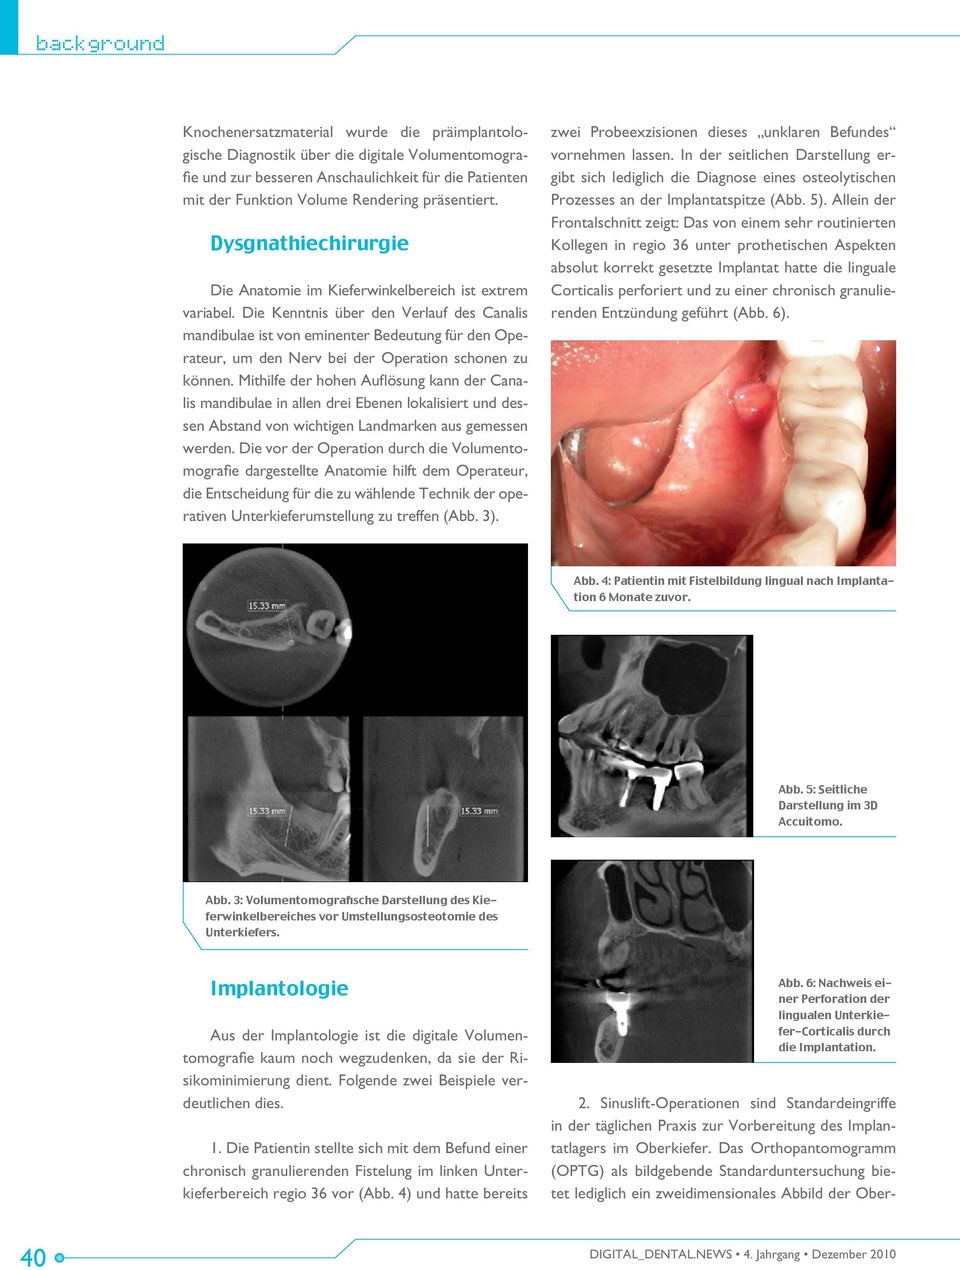 Die Kenntnis über den Verlauf des Canalis mandibulae ist von eminenter Bedeutung für den Operateur, um den Nerv bei der Operation schonen zu können.